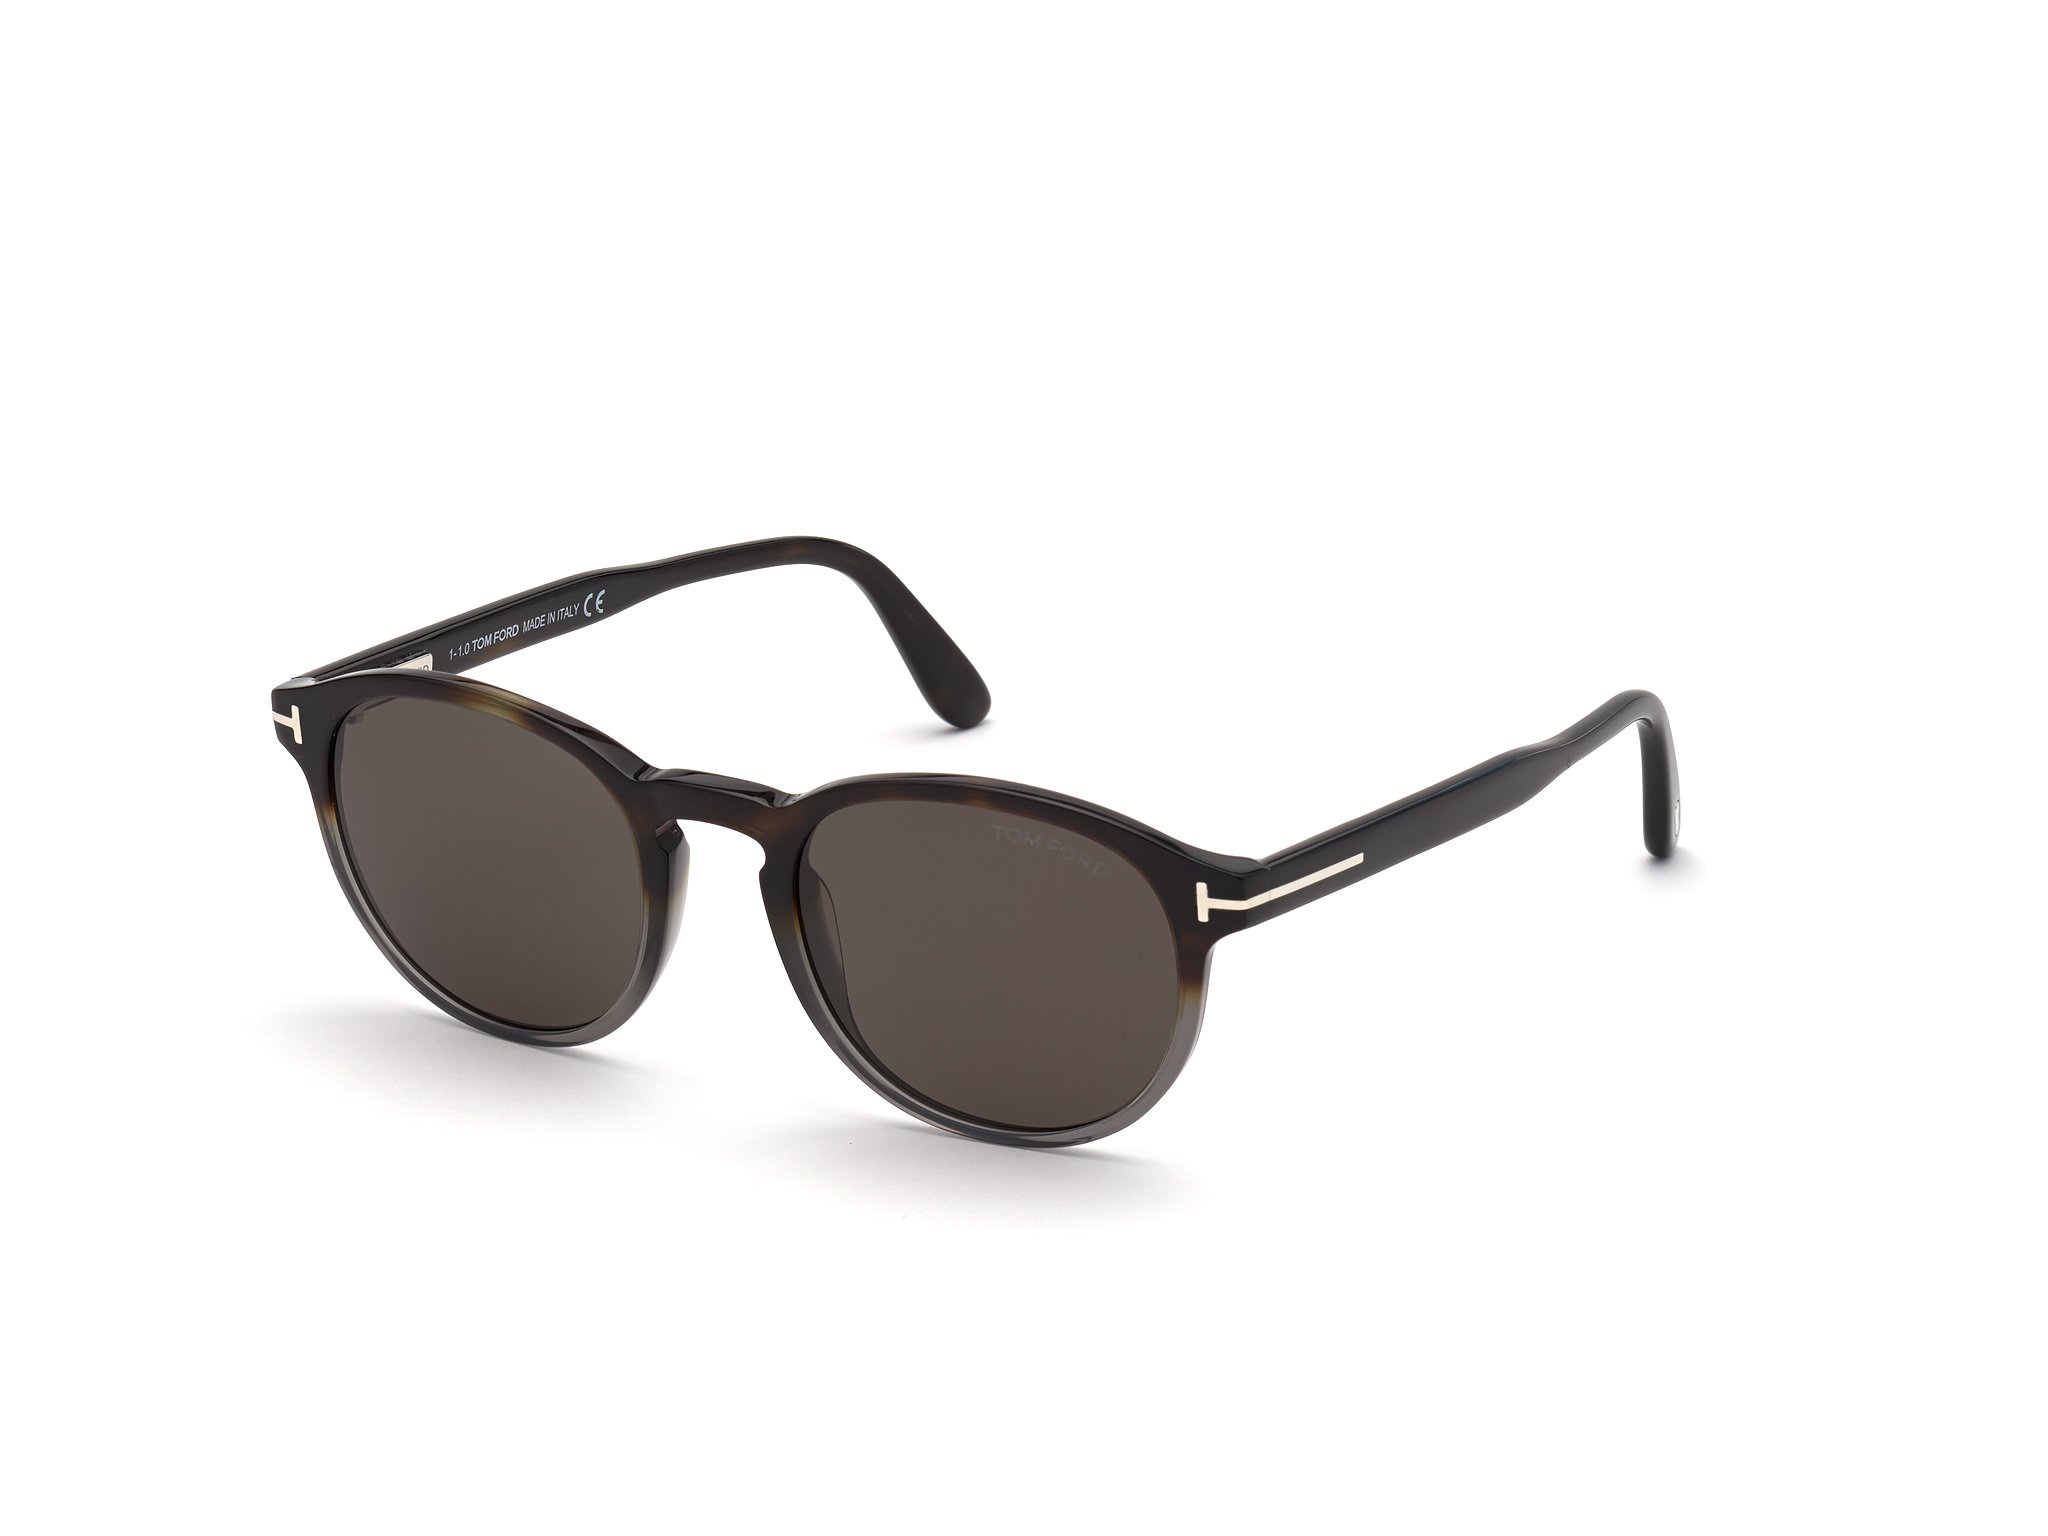 Das Bild zeigt die Sonnenbrille FT0834 der Marke Tom Ford in havanna grau von der Seite.